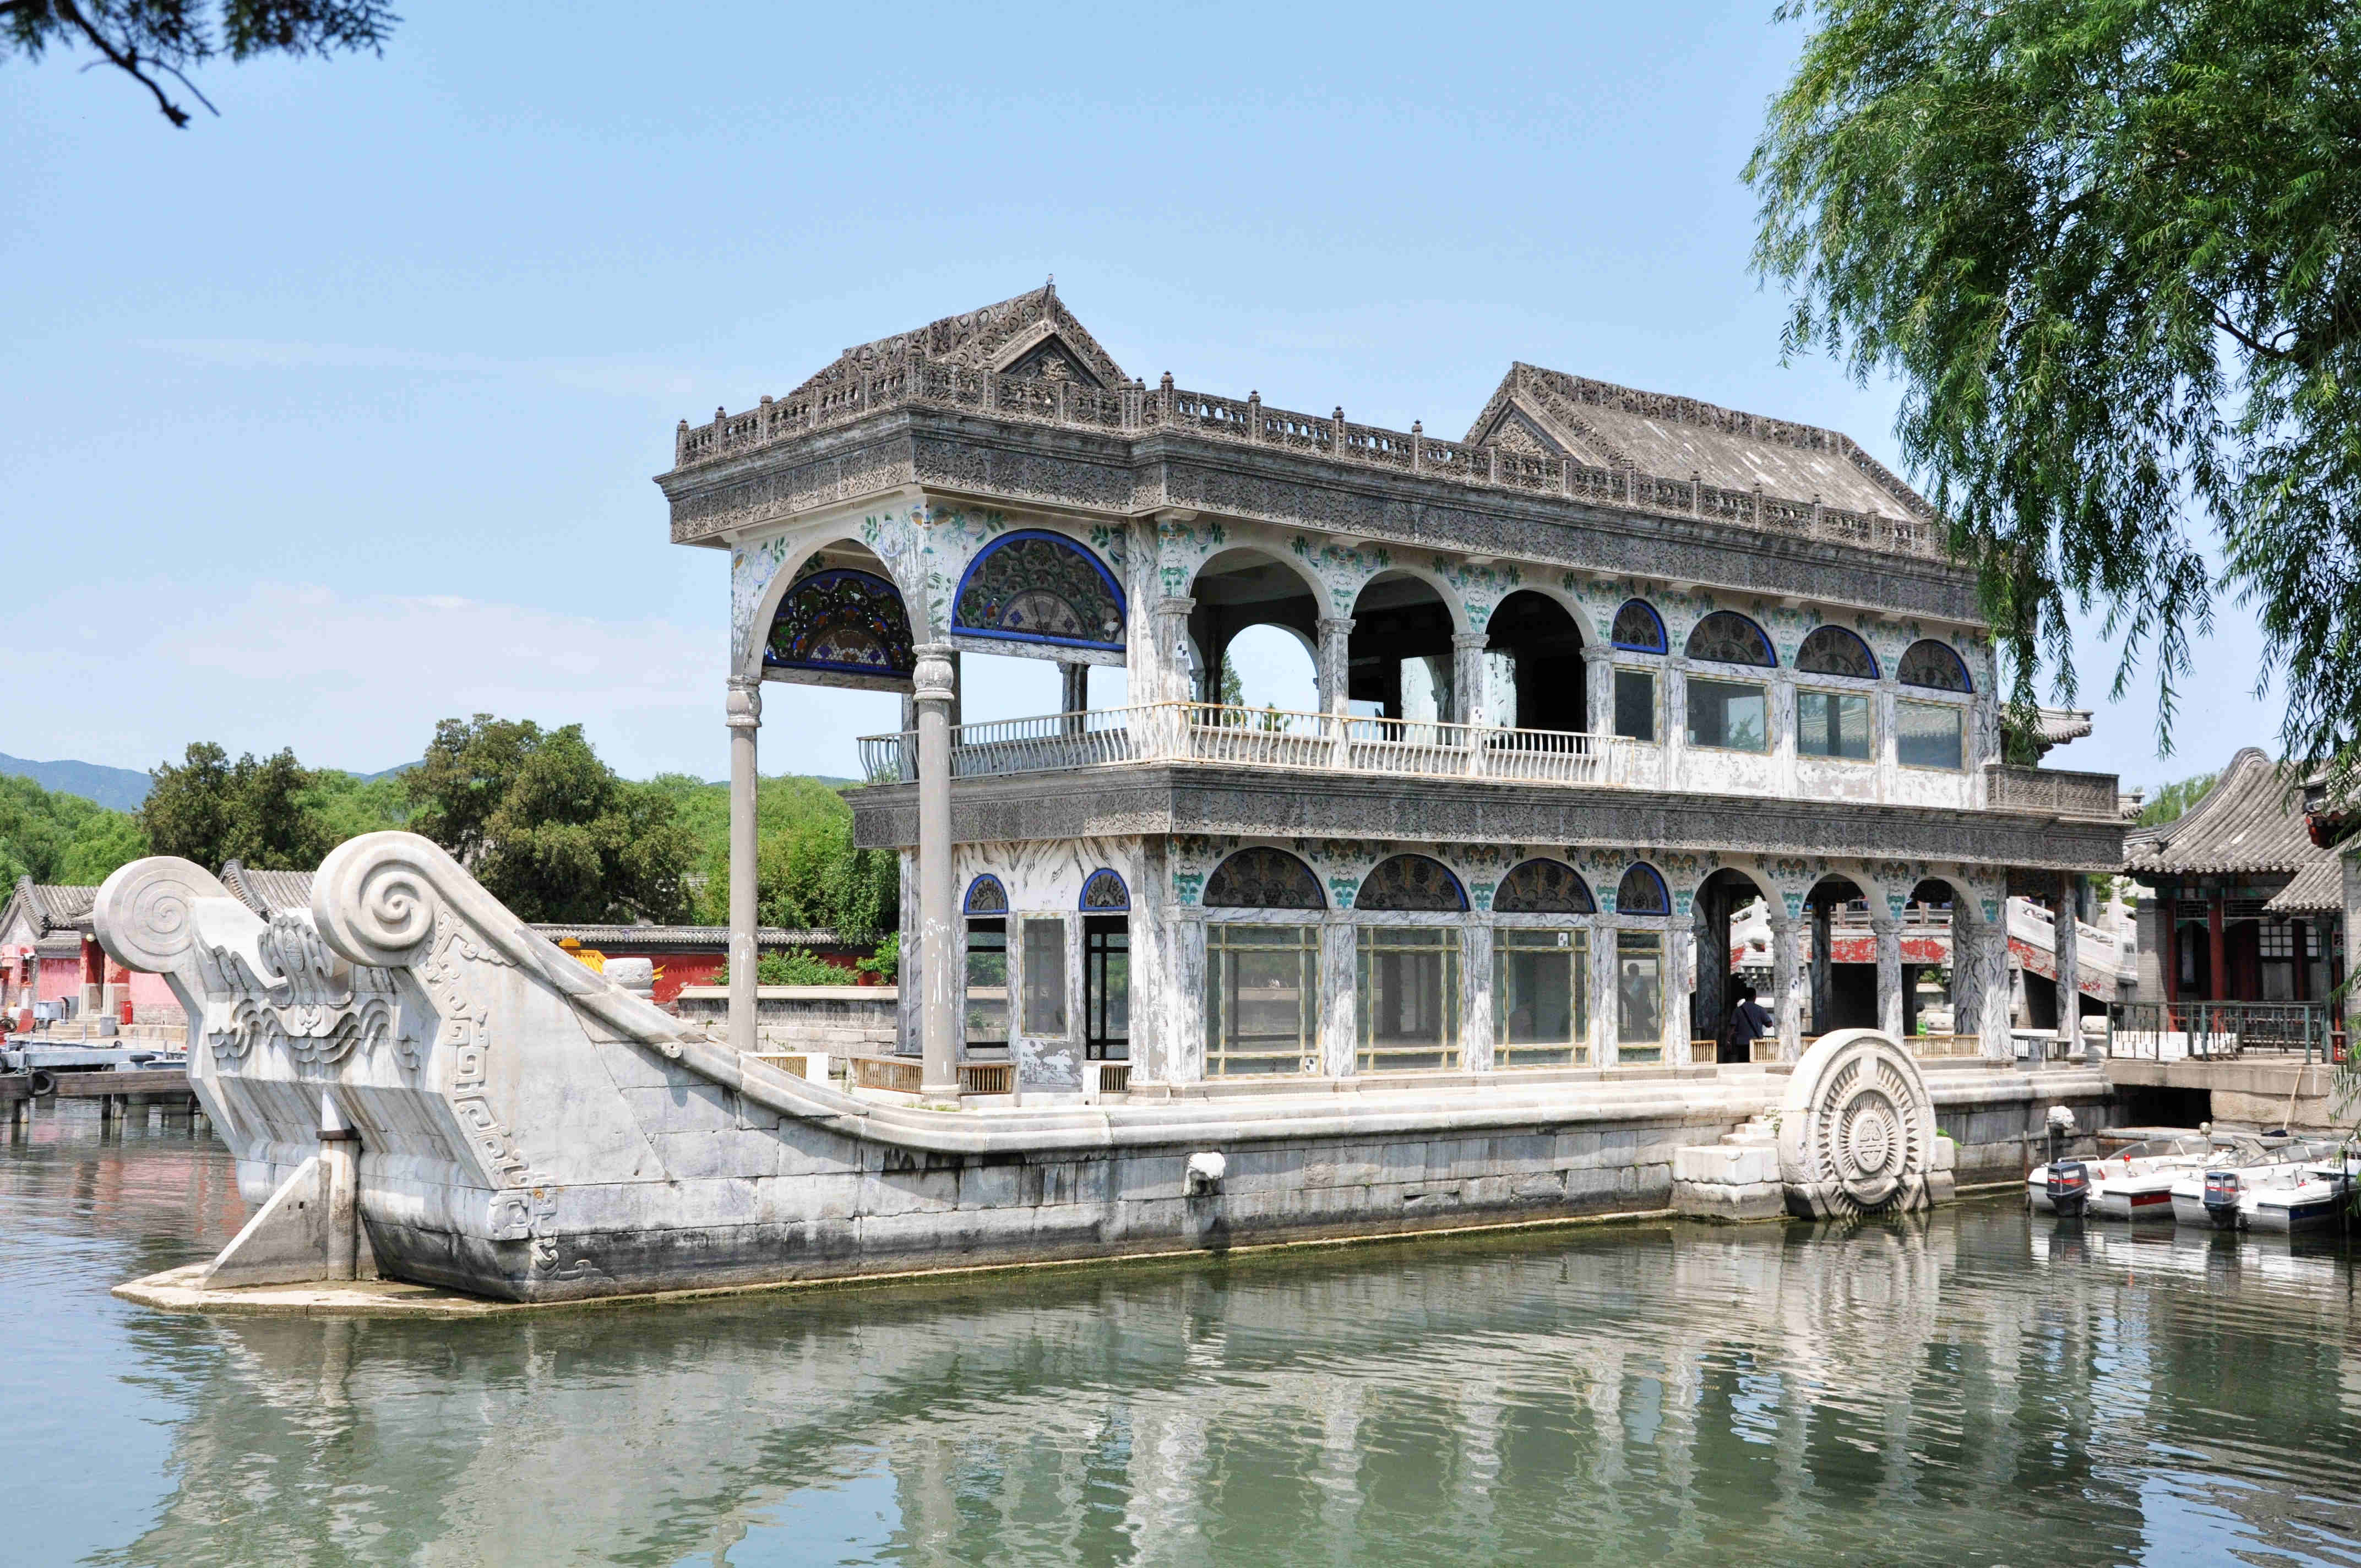 中国古建筑摄影高清桌面壁纸预览 | 10wallpaper.com